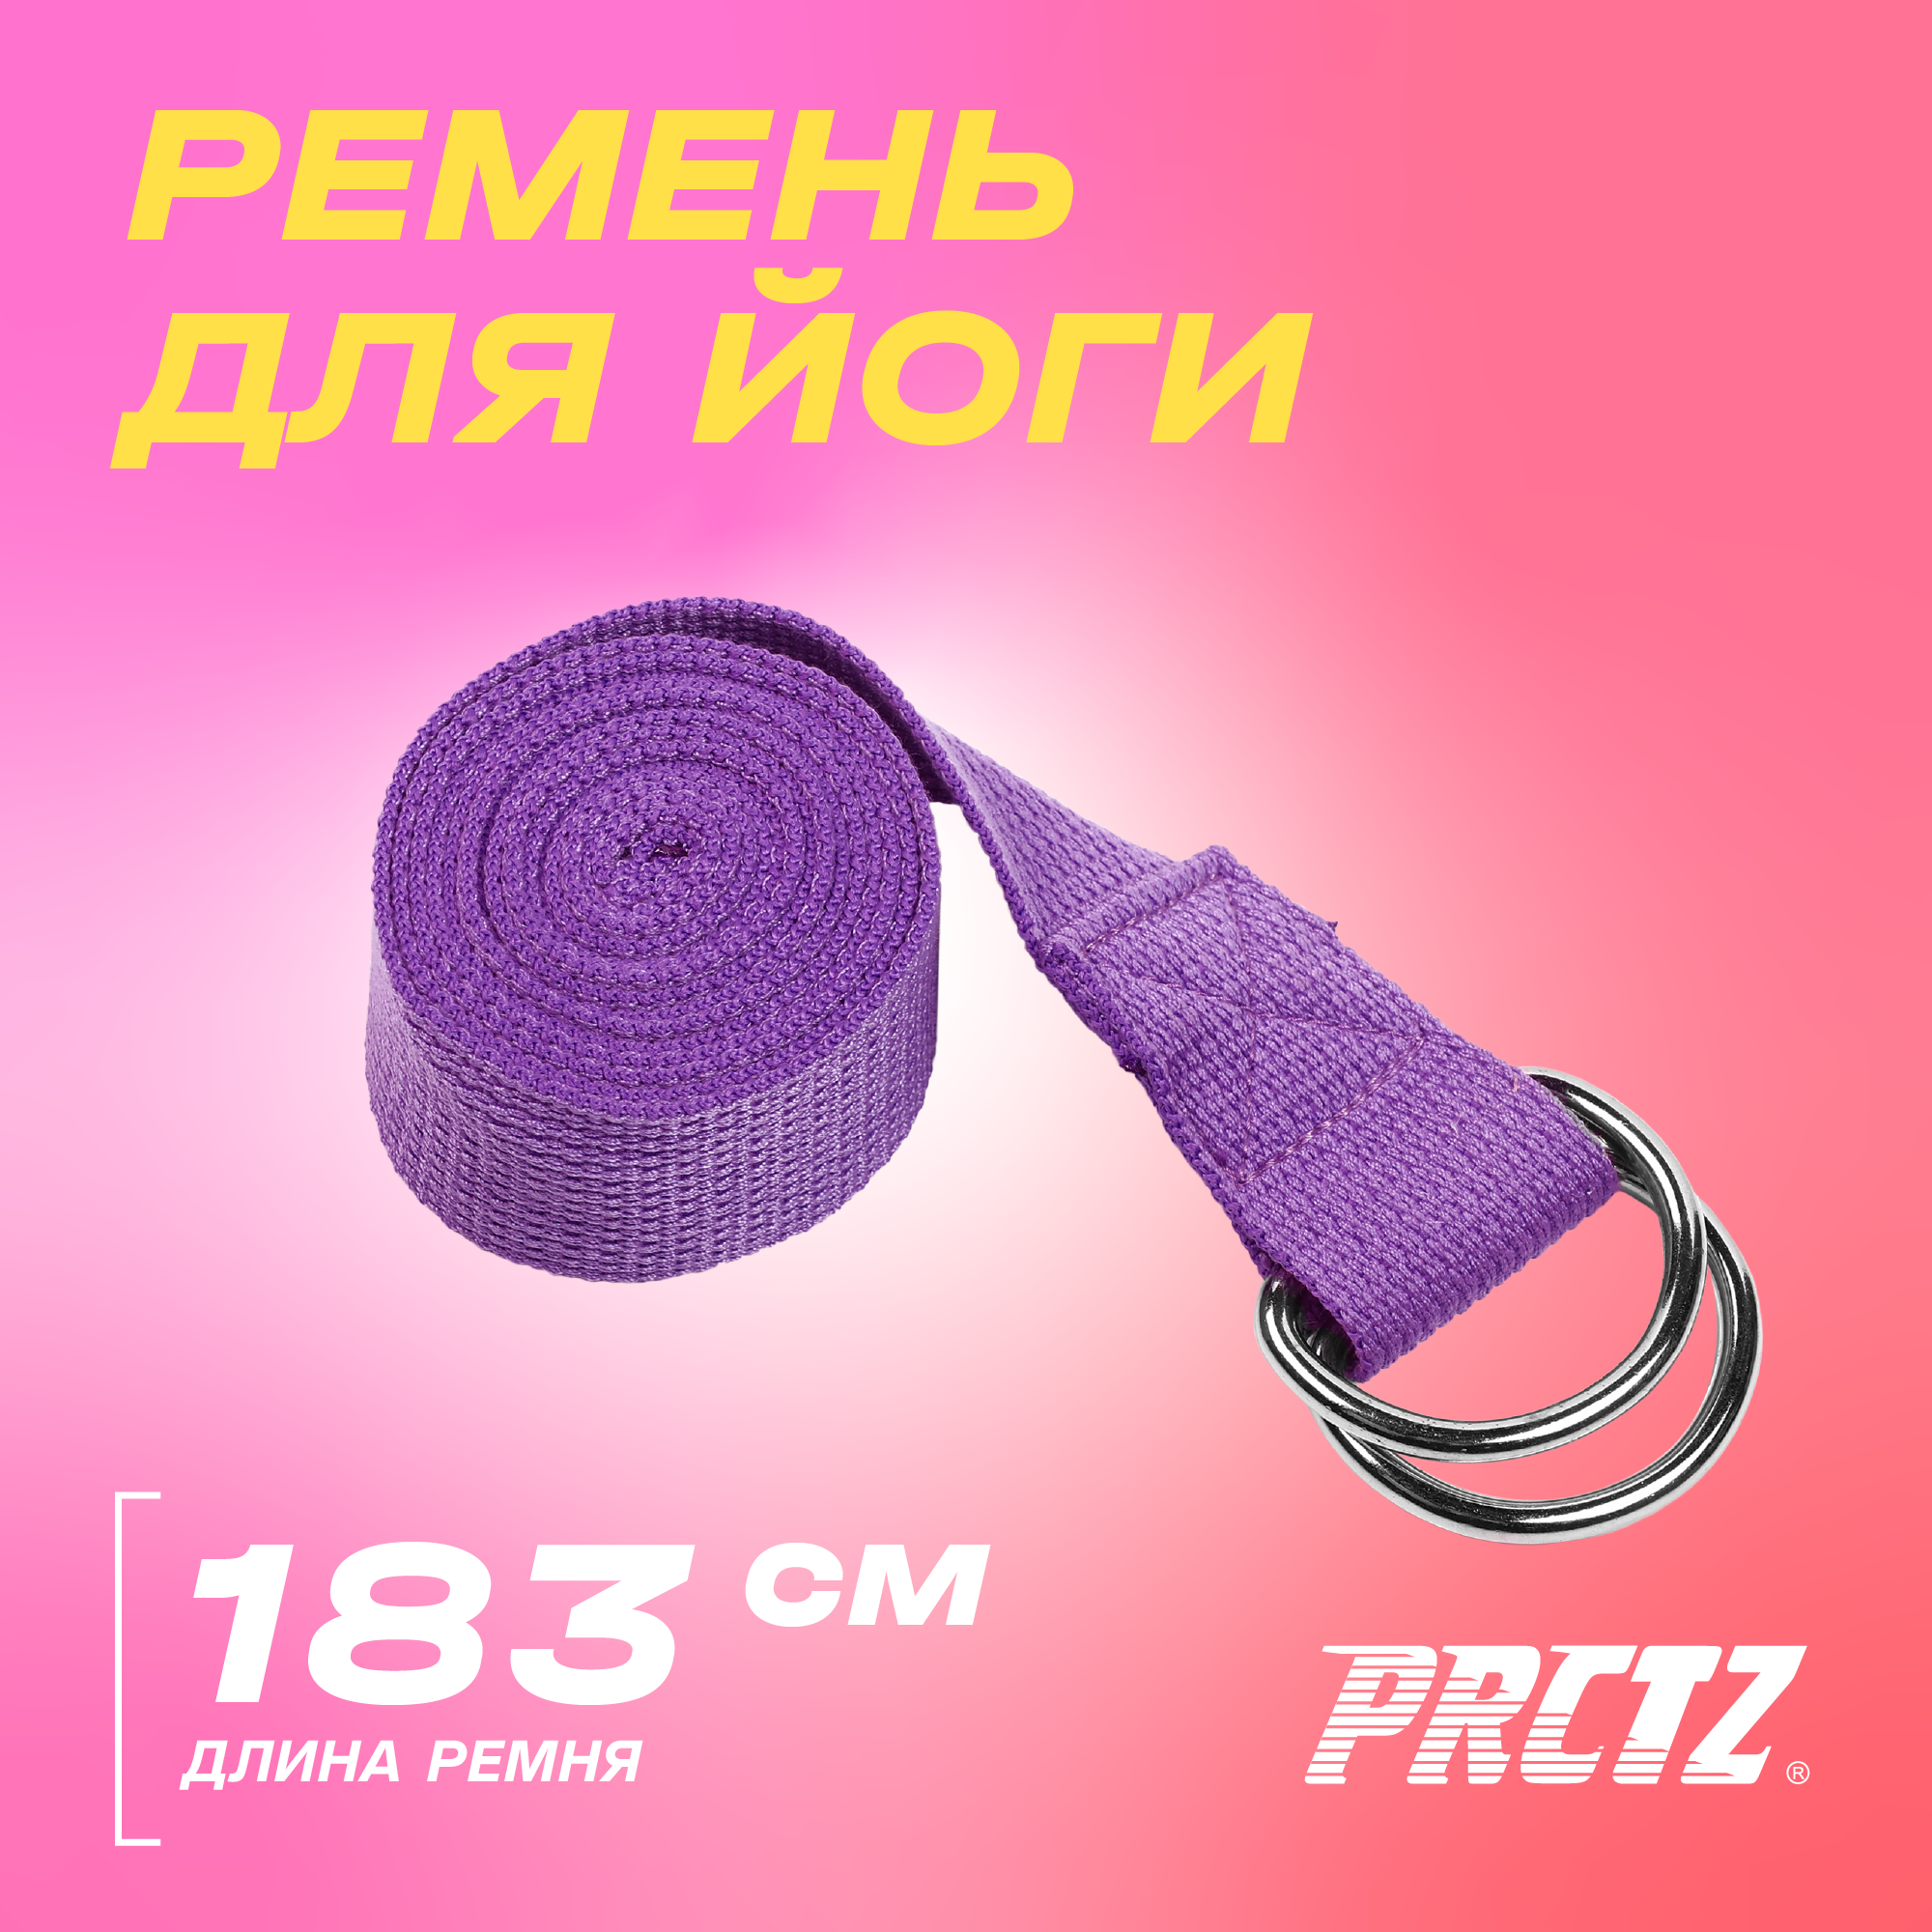 Ремень для йоги с металлическим карабином PRCTZ YOGA STRAP фиолет.